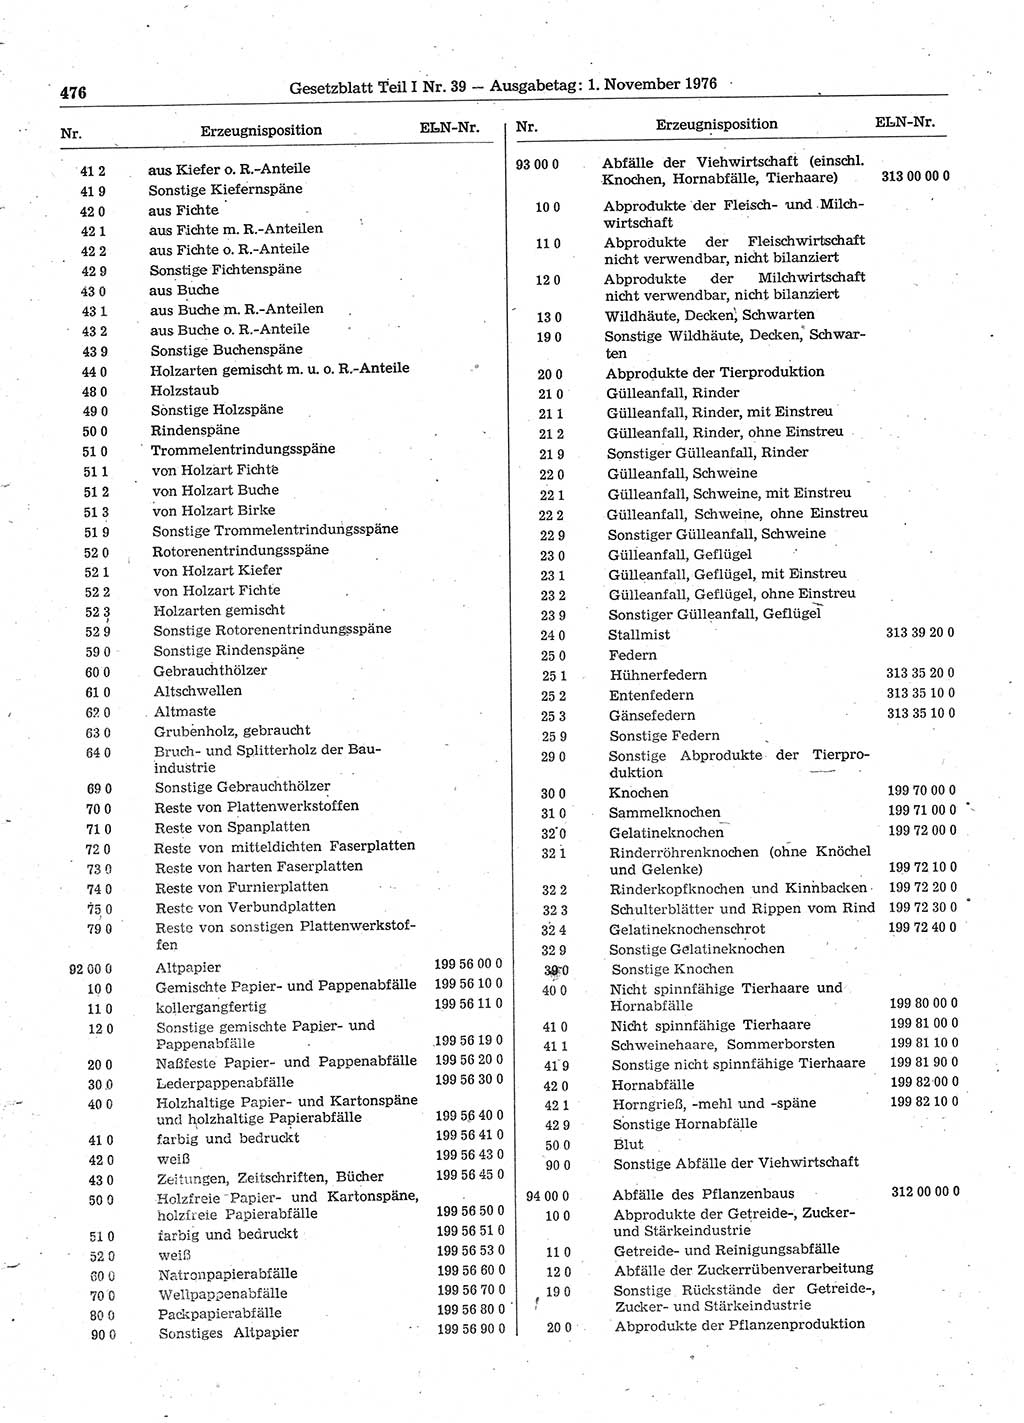 Gesetzblatt (GBl.) der Deutschen Demokratischen Republik (DDR) Teil Ⅰ 1976, Seite 476 (GBl. DDR Ⅰ 1976, S. 476)